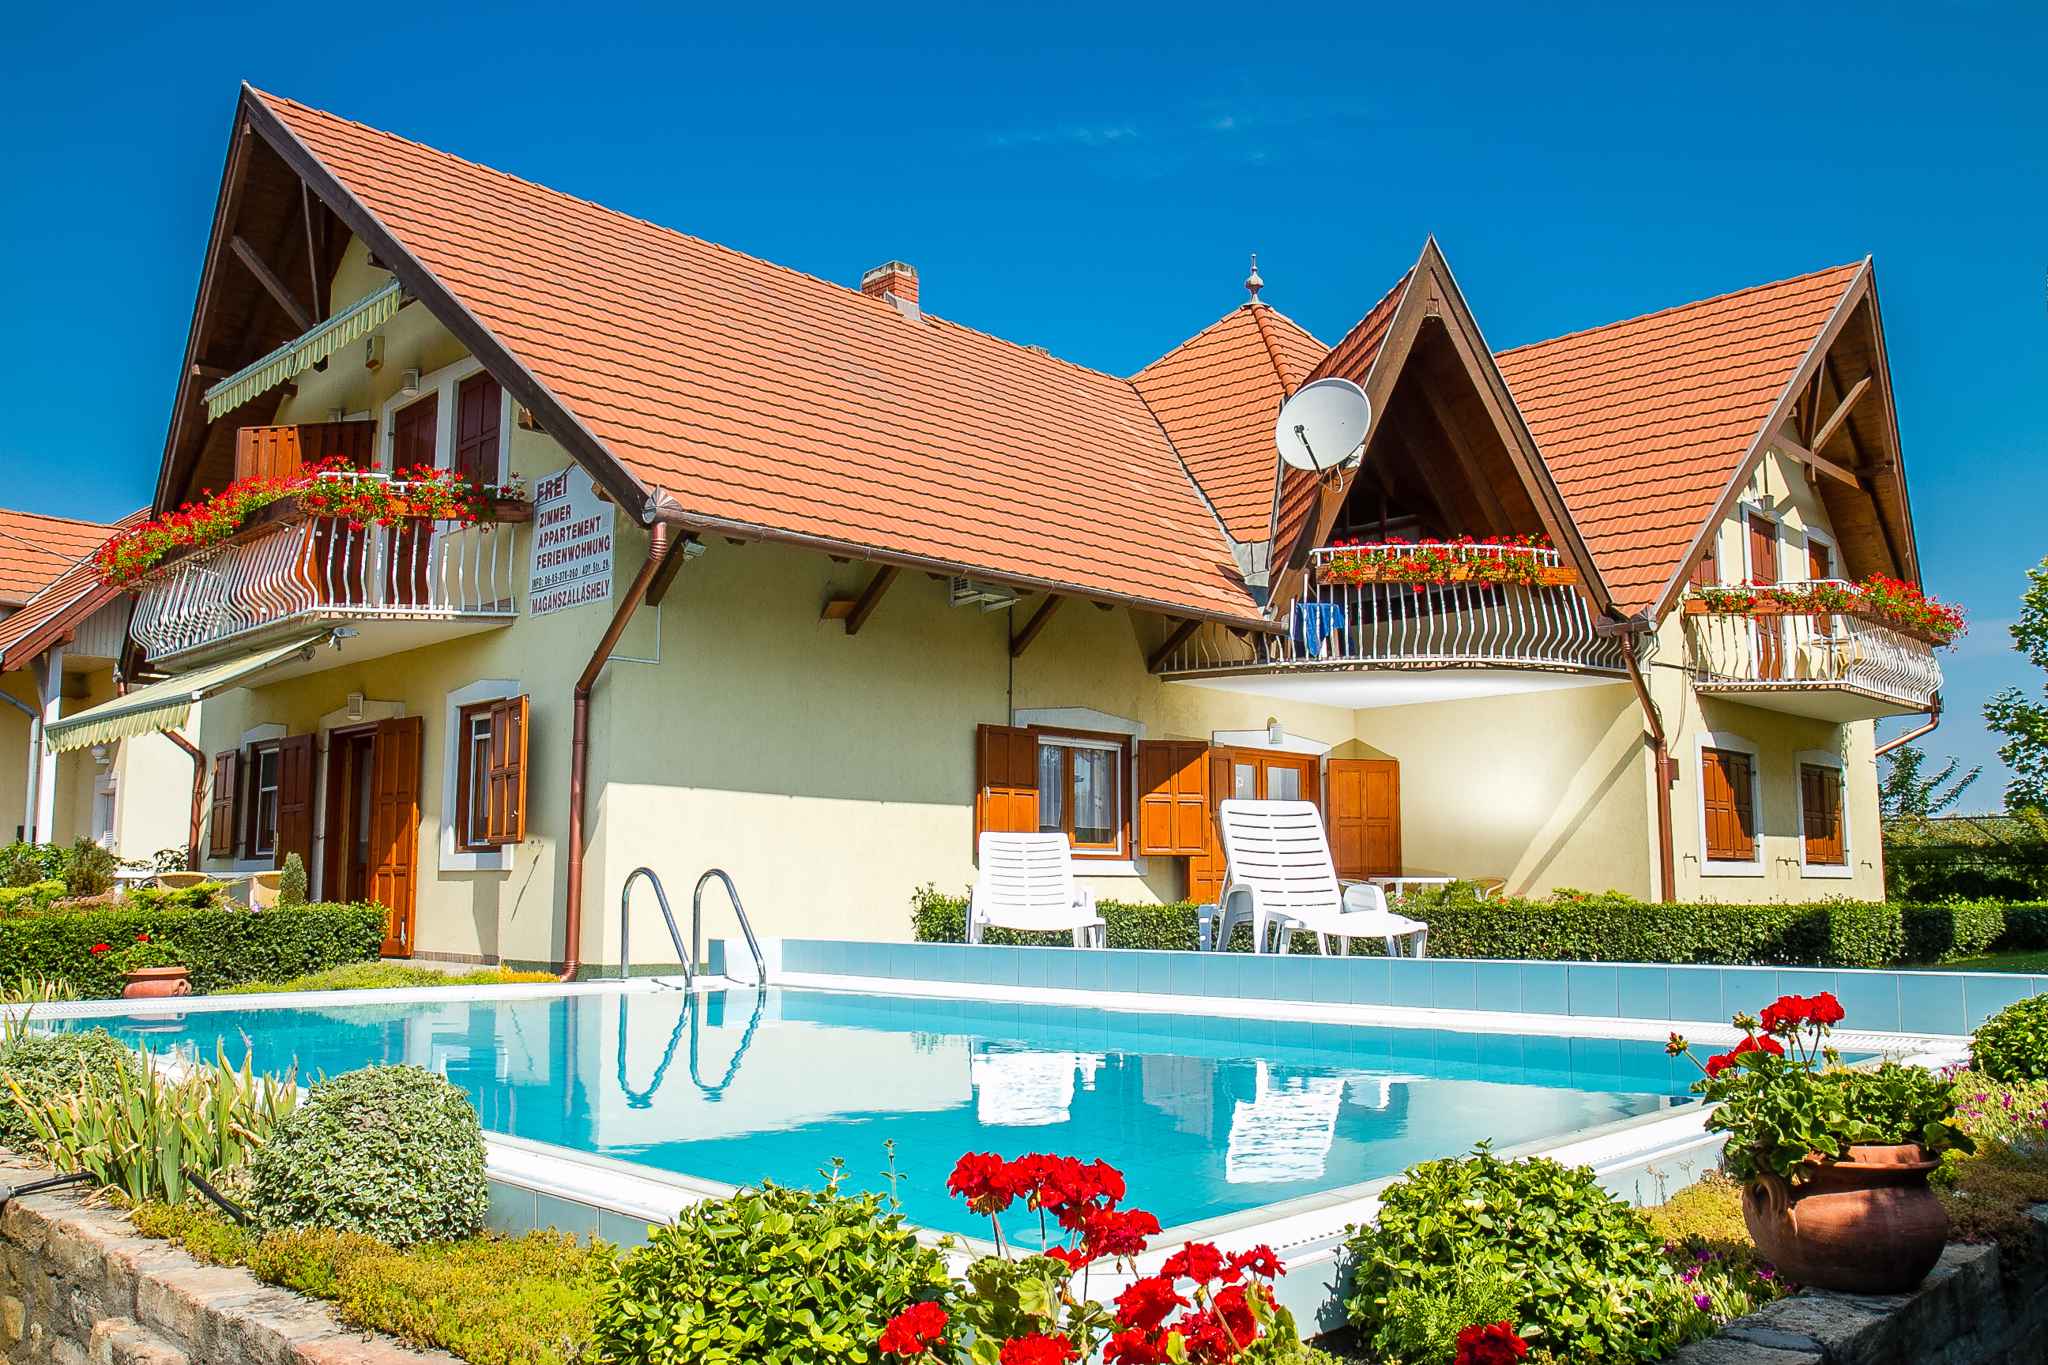 Ferienwohnung mit Pool und gepflegtem Garten  am Balaton Plattensee